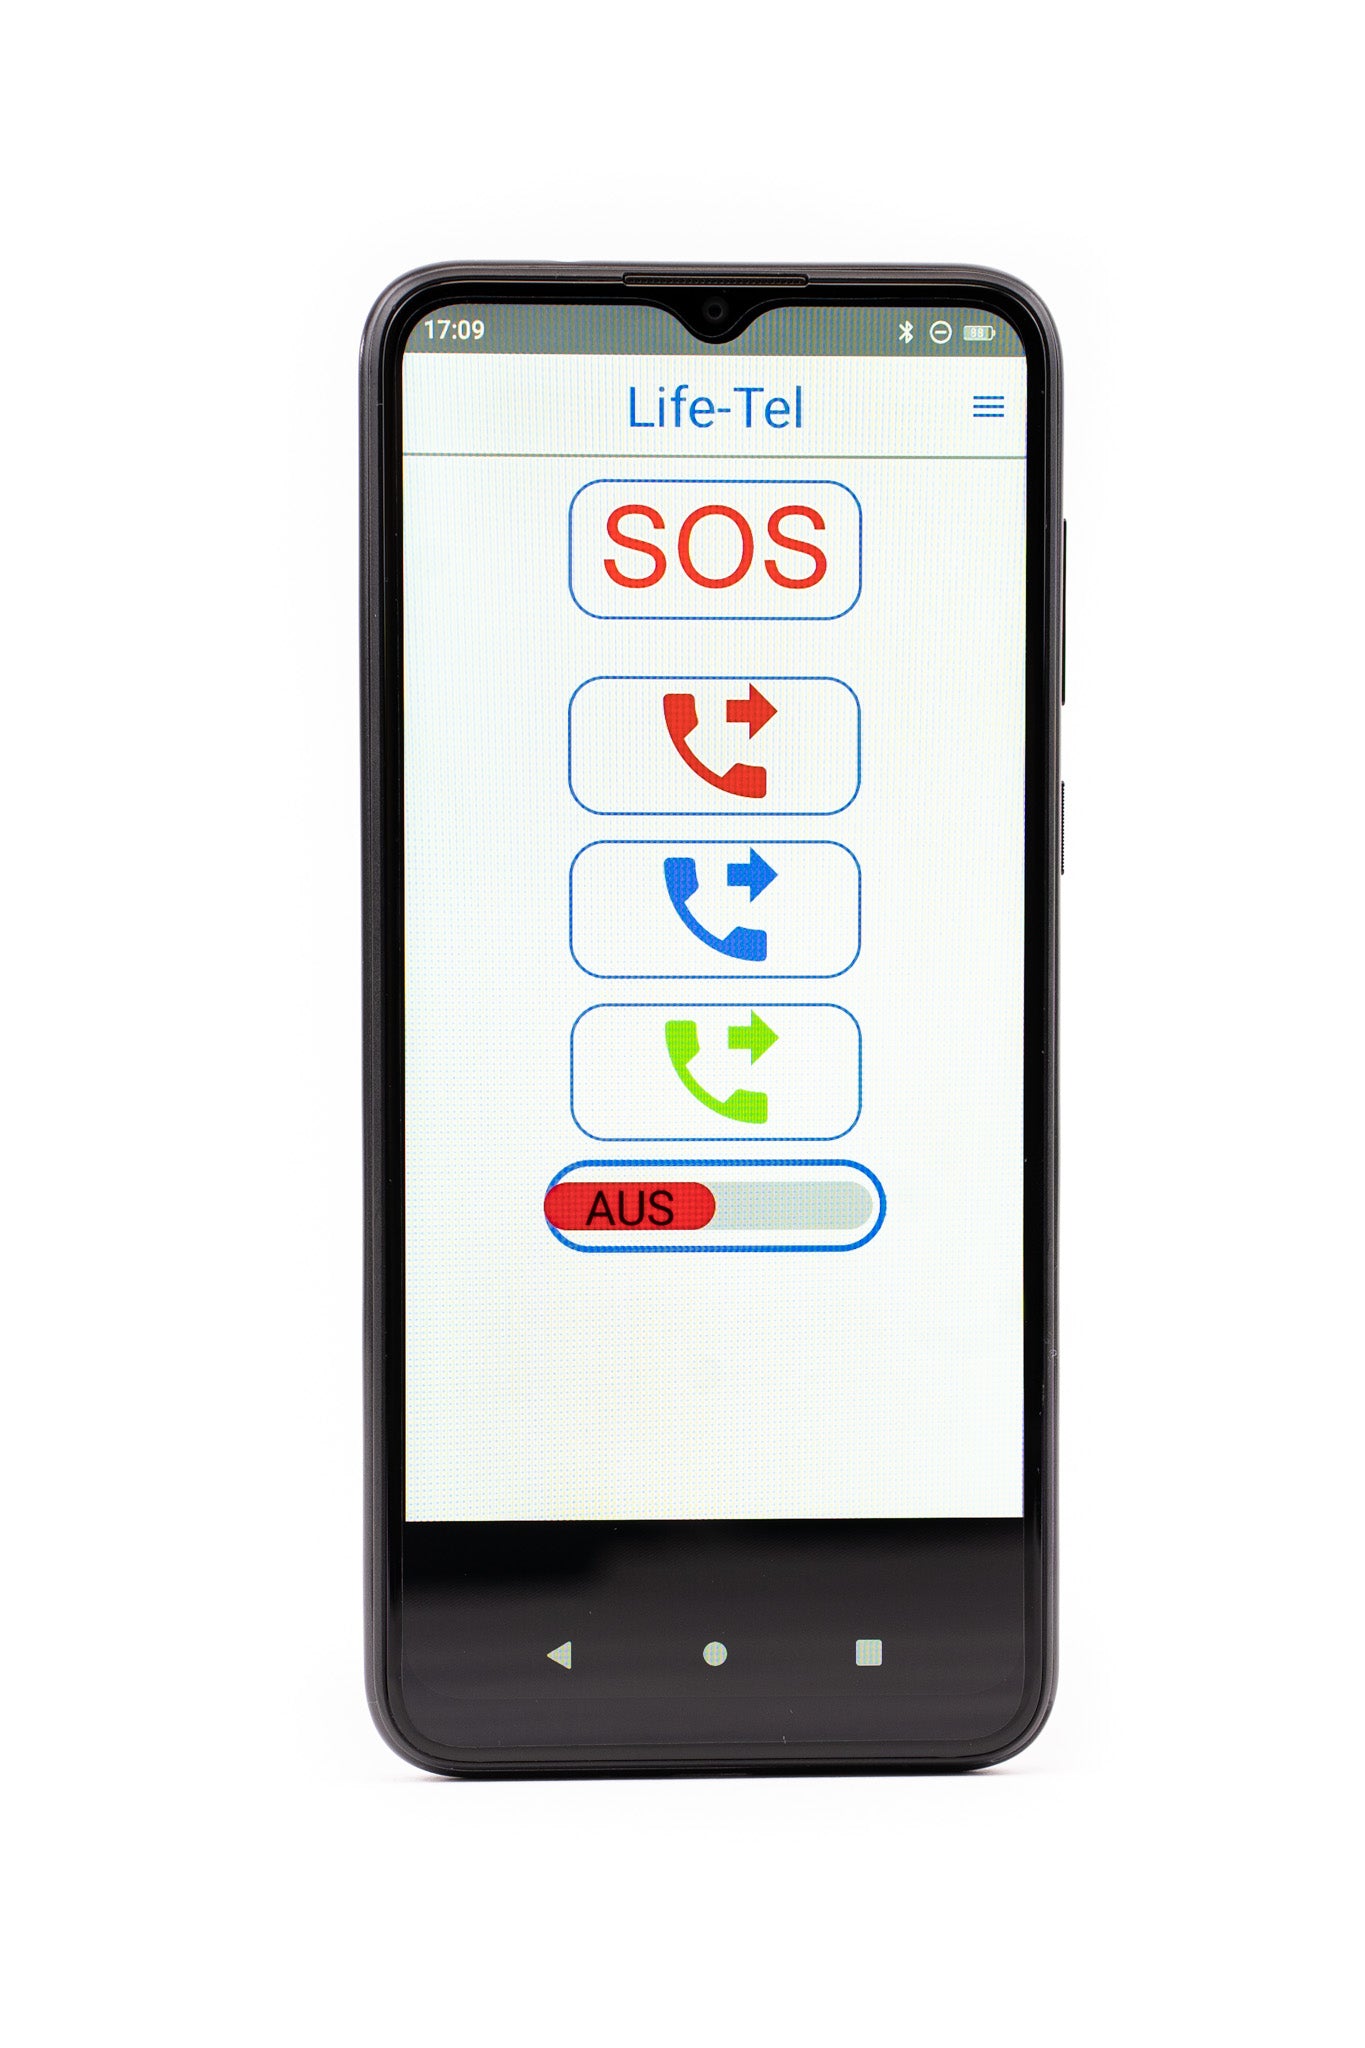 Life Tel 6 L: teléfono inteligente industrial como sistema de señal de emergencia personal (PNA) para trabajadores solitarios, incluido el interruptor de hombre muerto y la aplicación de llamada de emergencia